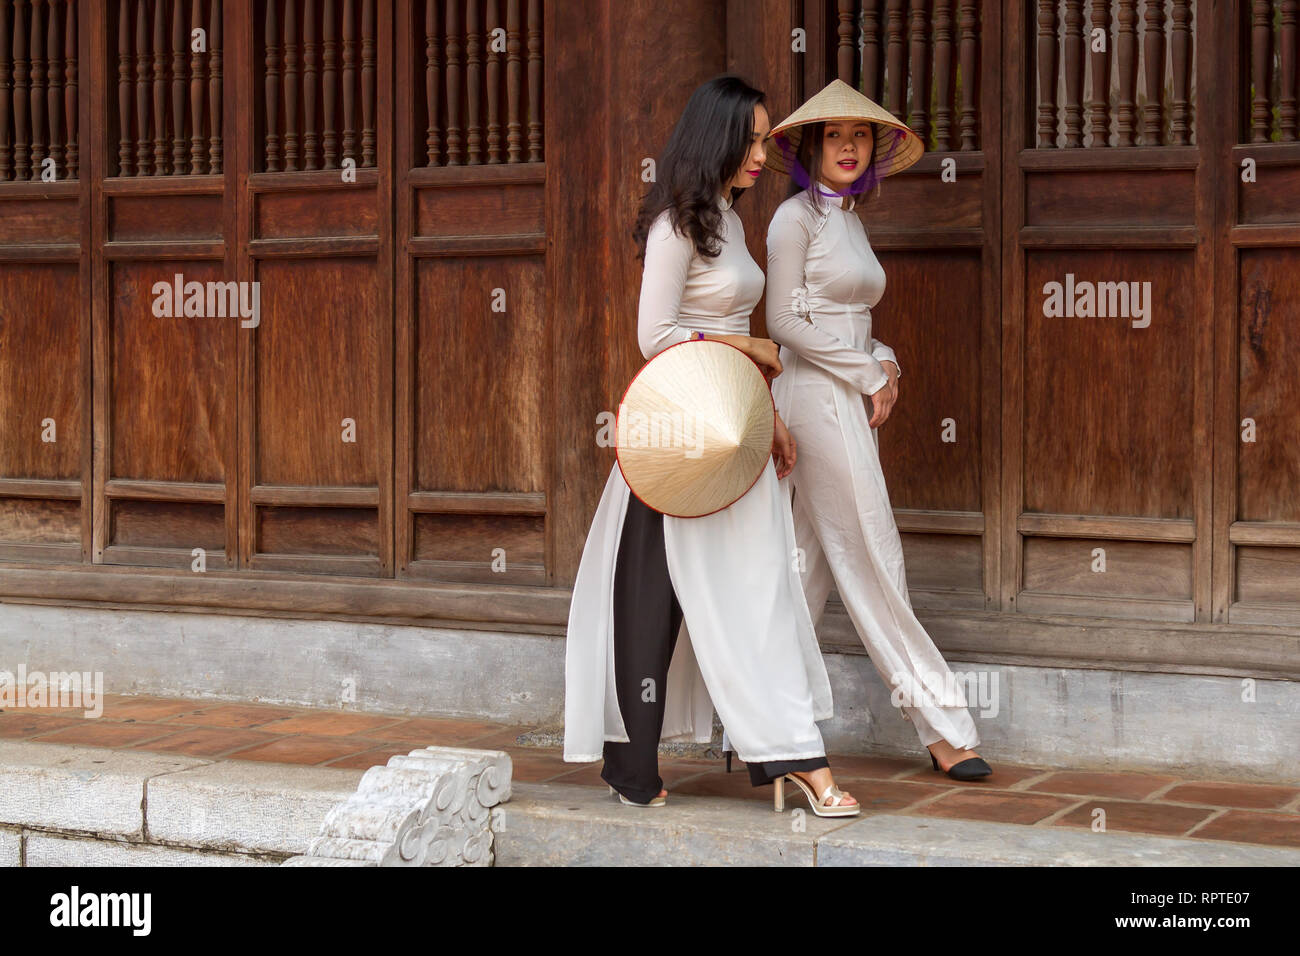 Giovane vietnamita le donne che indossano il tradizionale abito Ao IAM e il cappello conico Non La. ubicazione; Tempio della Letteratura ad Hanoi, Vietnam Foto Stock